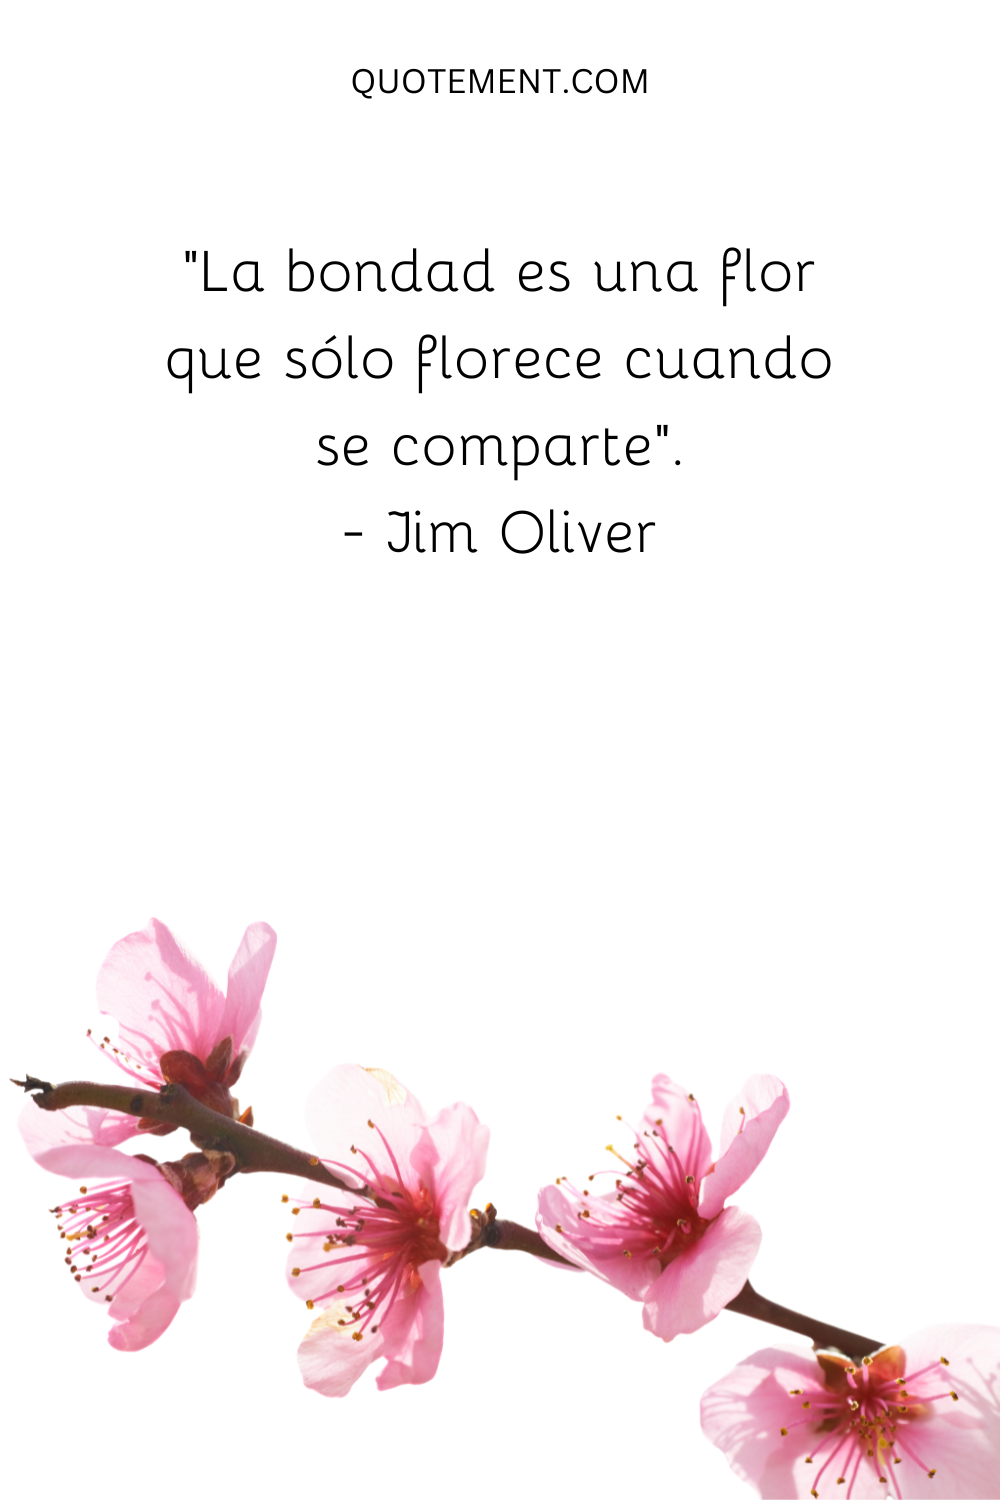 "La bondad es una flor que sólo florece cuando se comparte". - Jim Oliver